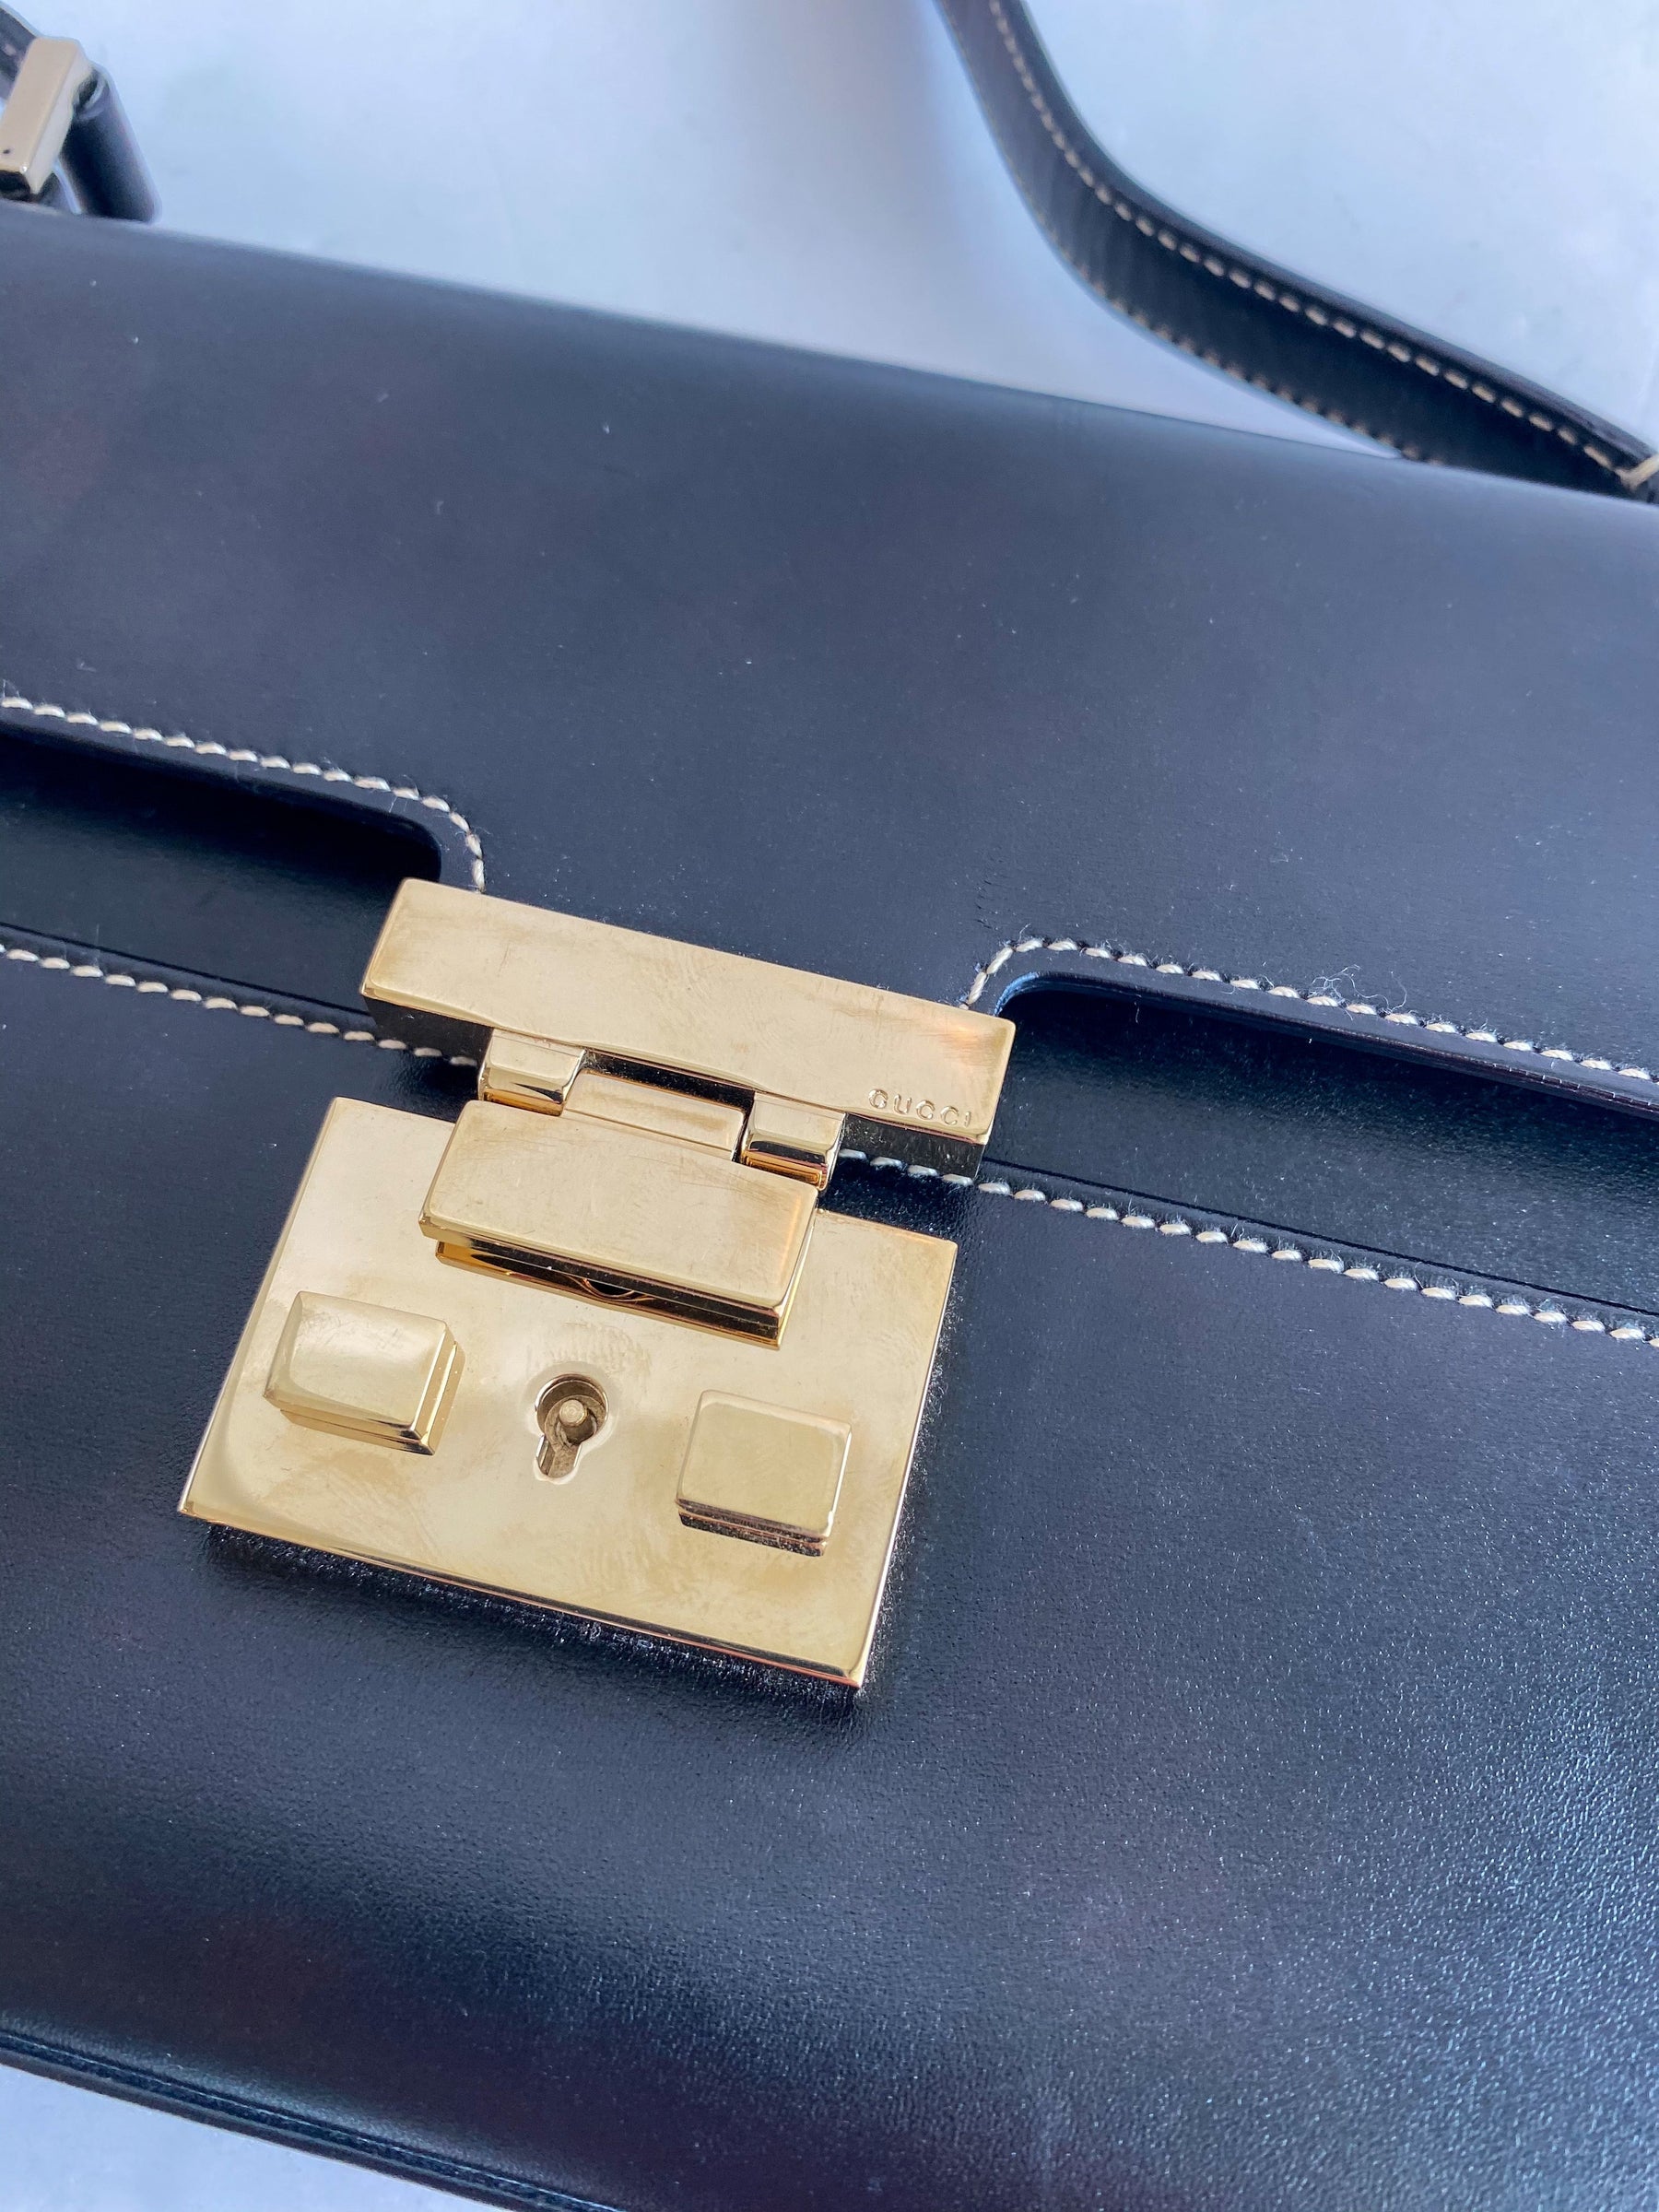 Gucci Leather Shoulder Bag Black Gold Padlock Closure